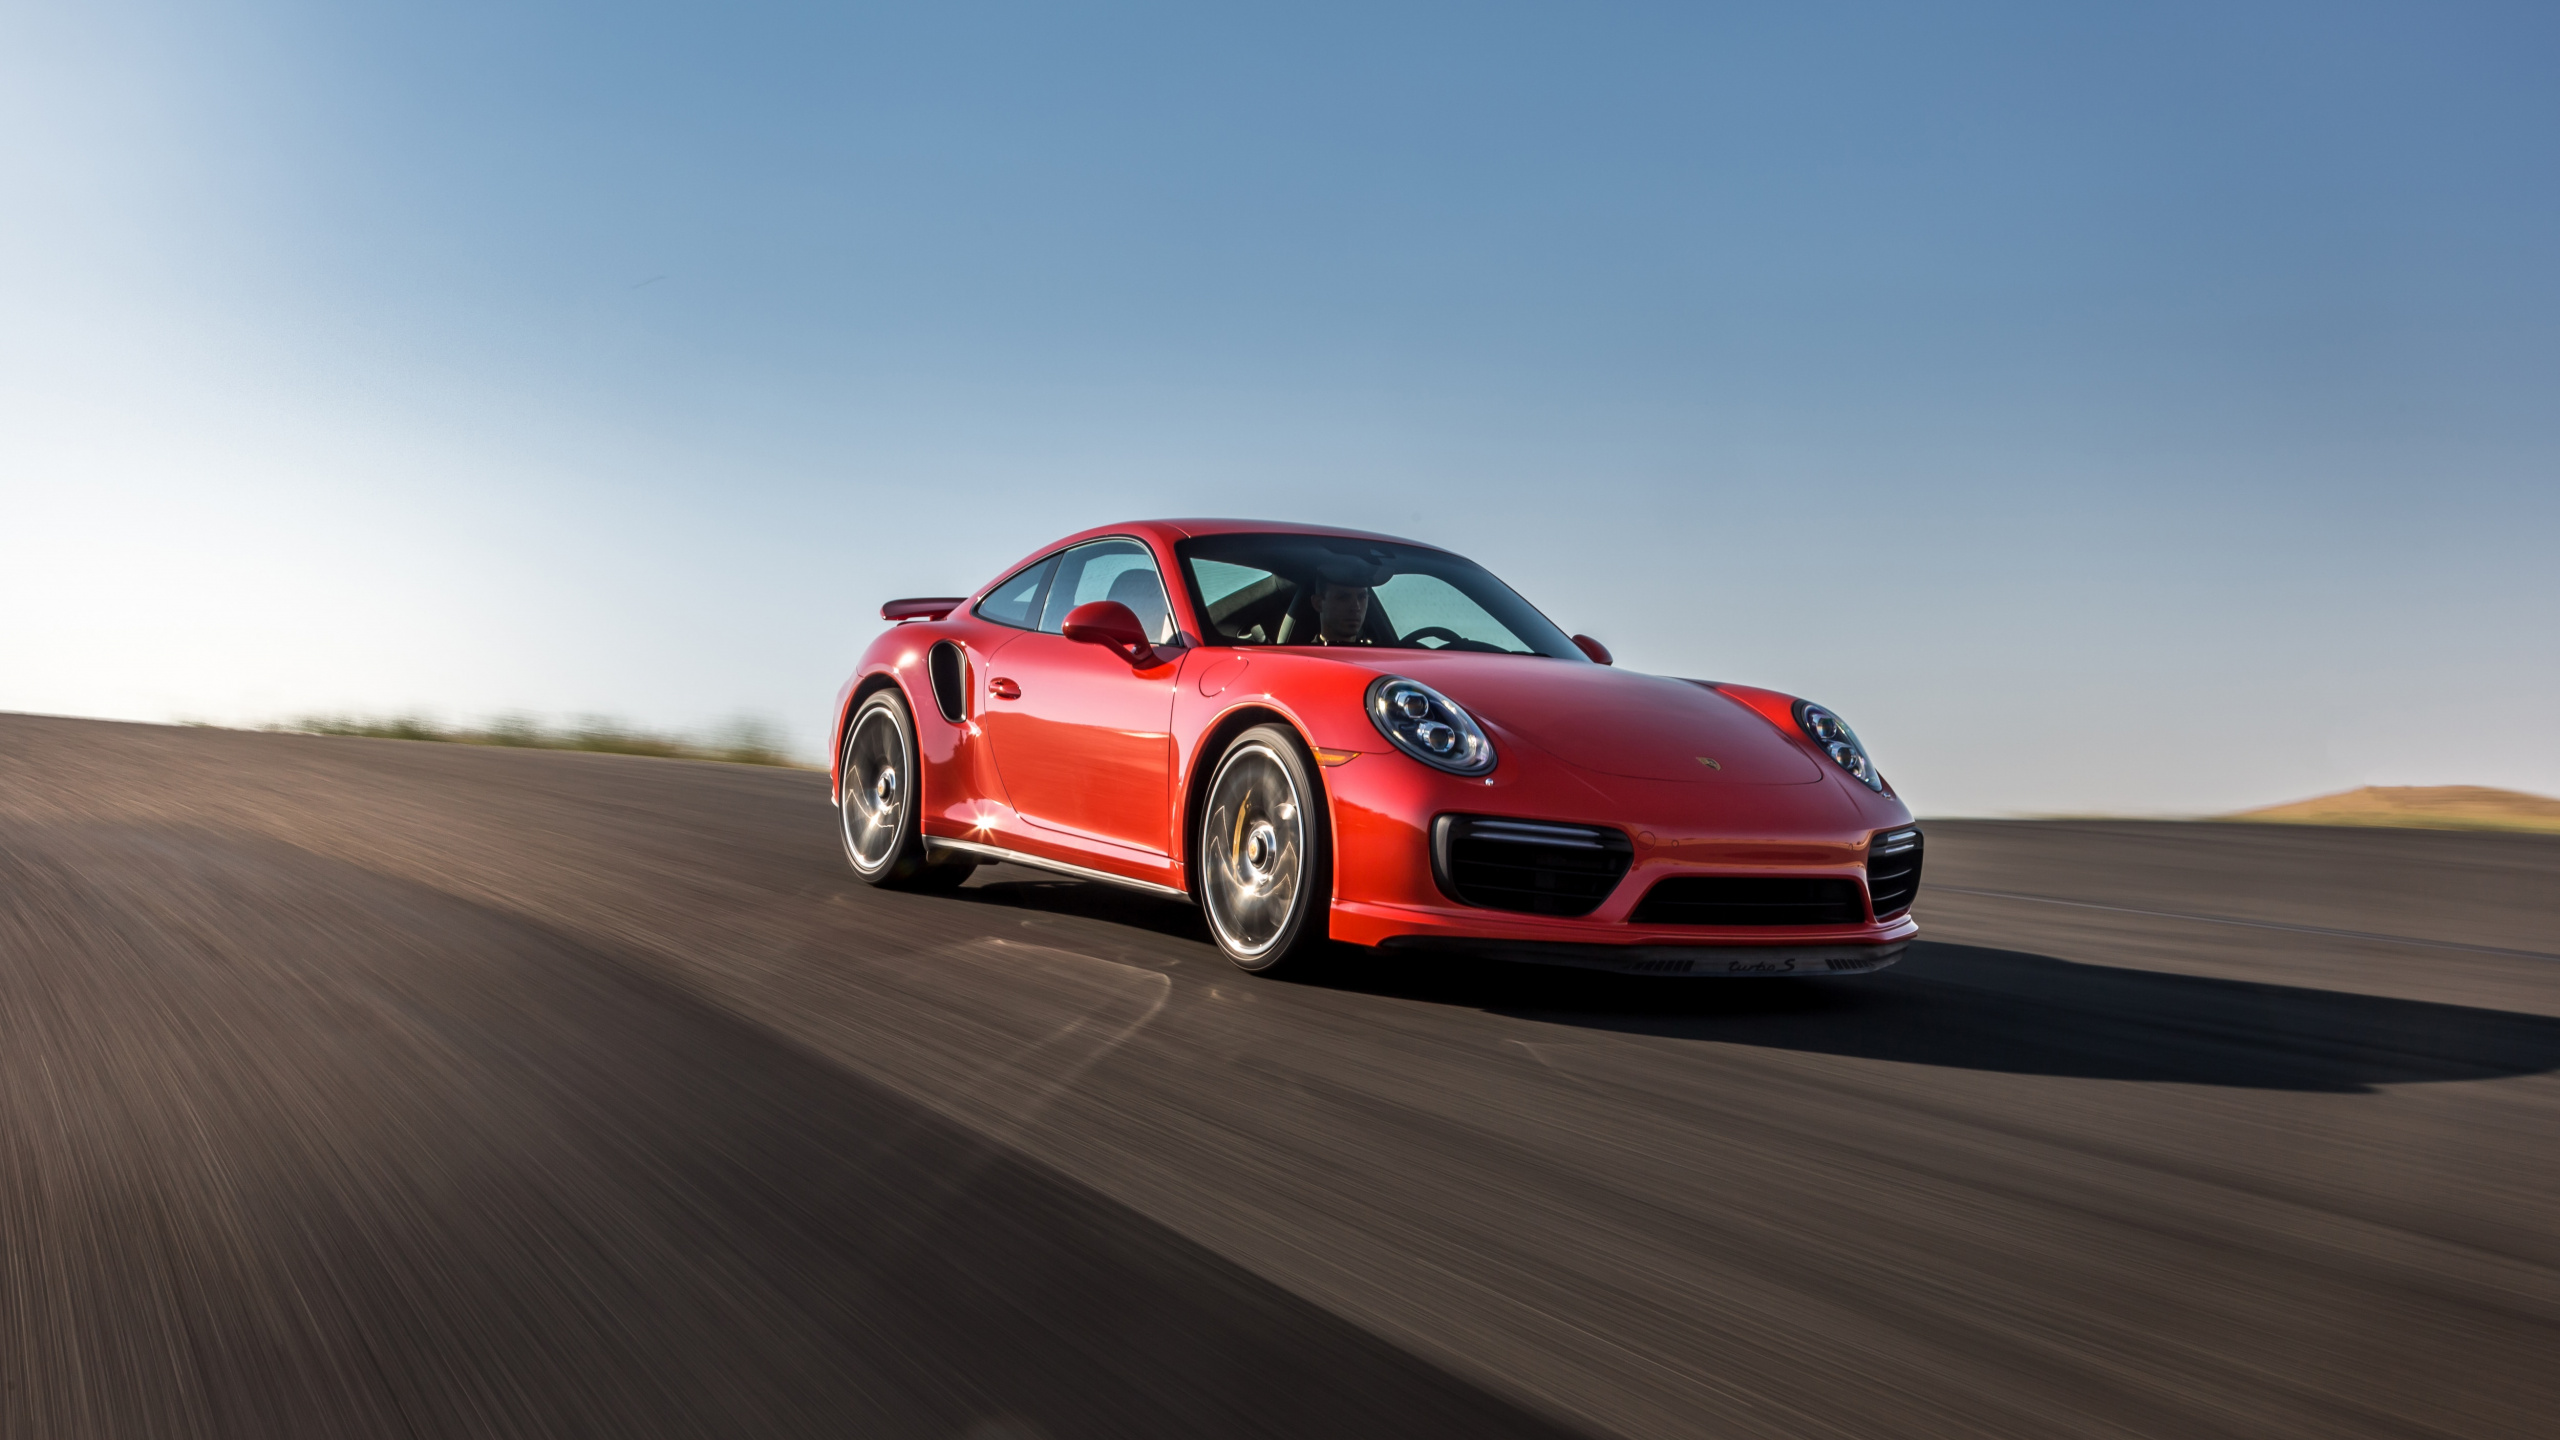 Porsche 911 Rojo en la Carretera Durante el Día. Wallpaper in 2560x1440 Resolution